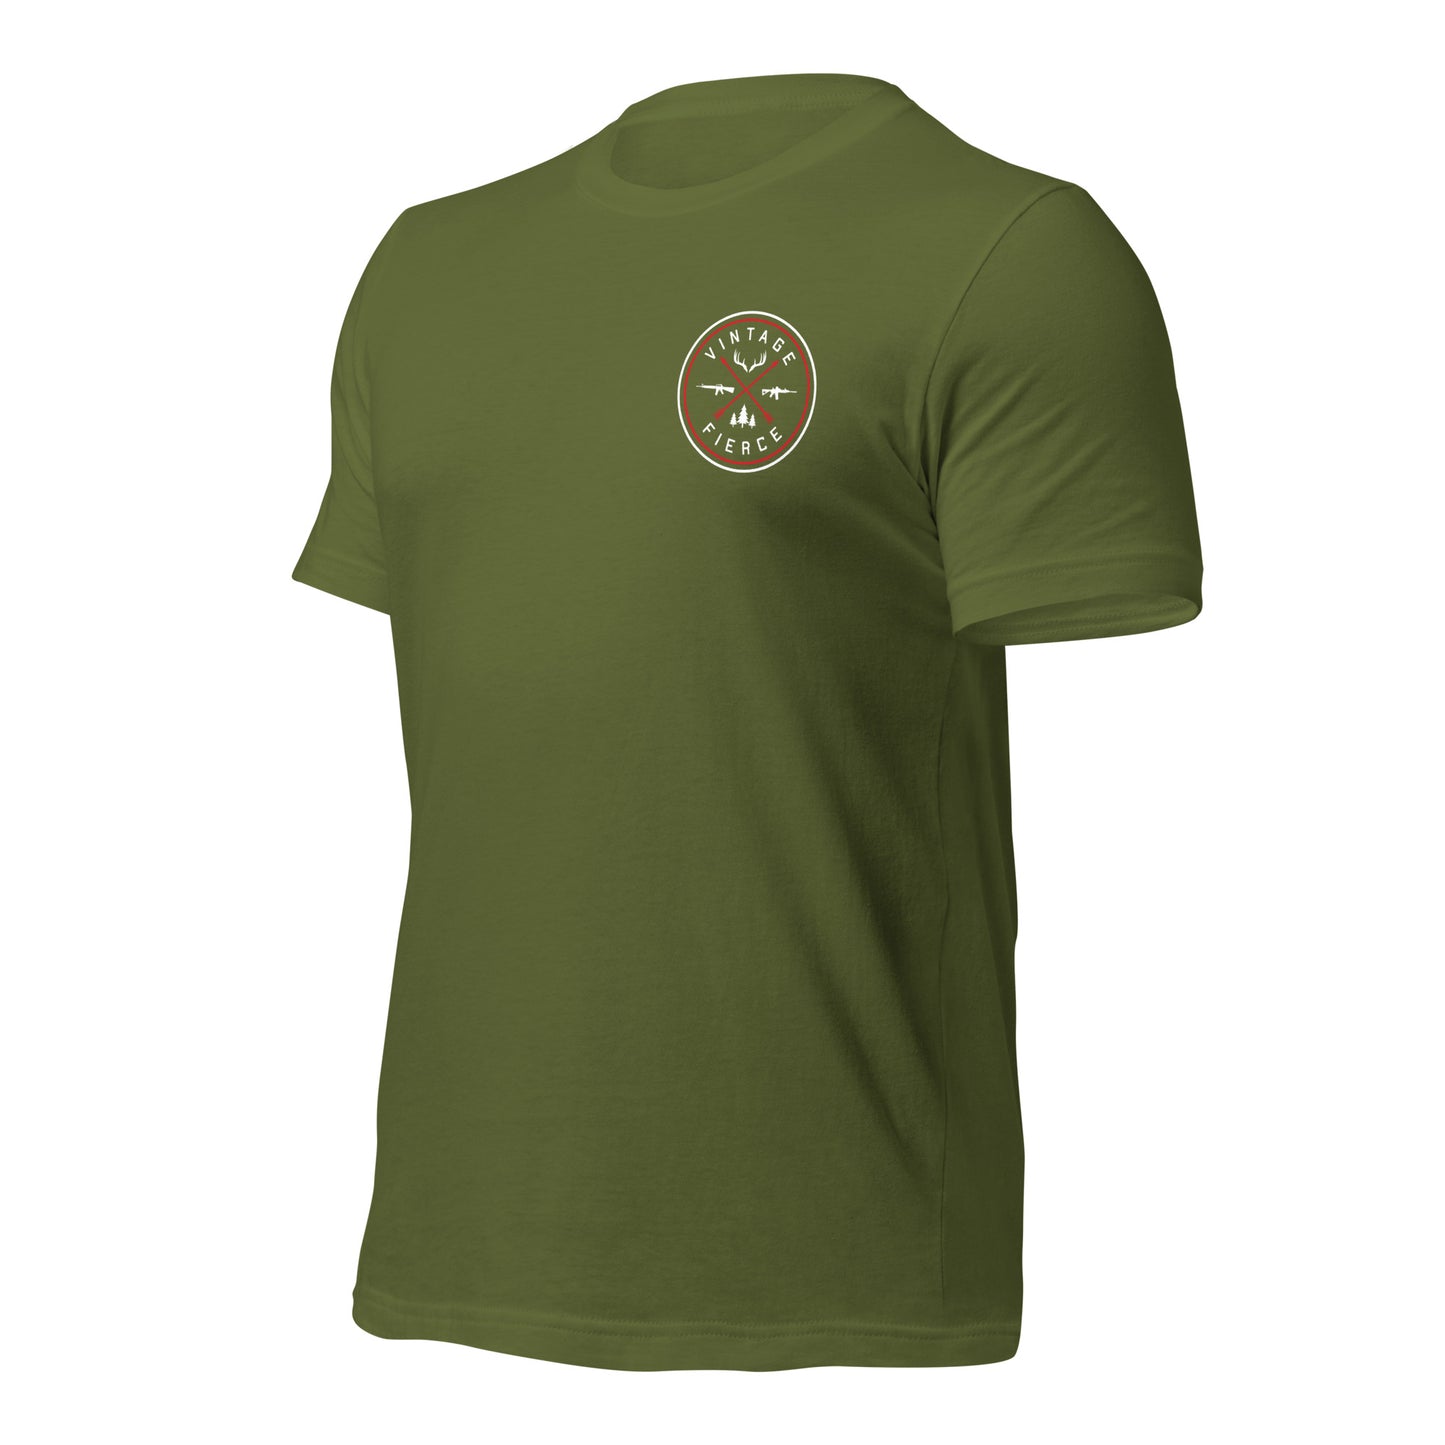 M1 Garand T-Shirt